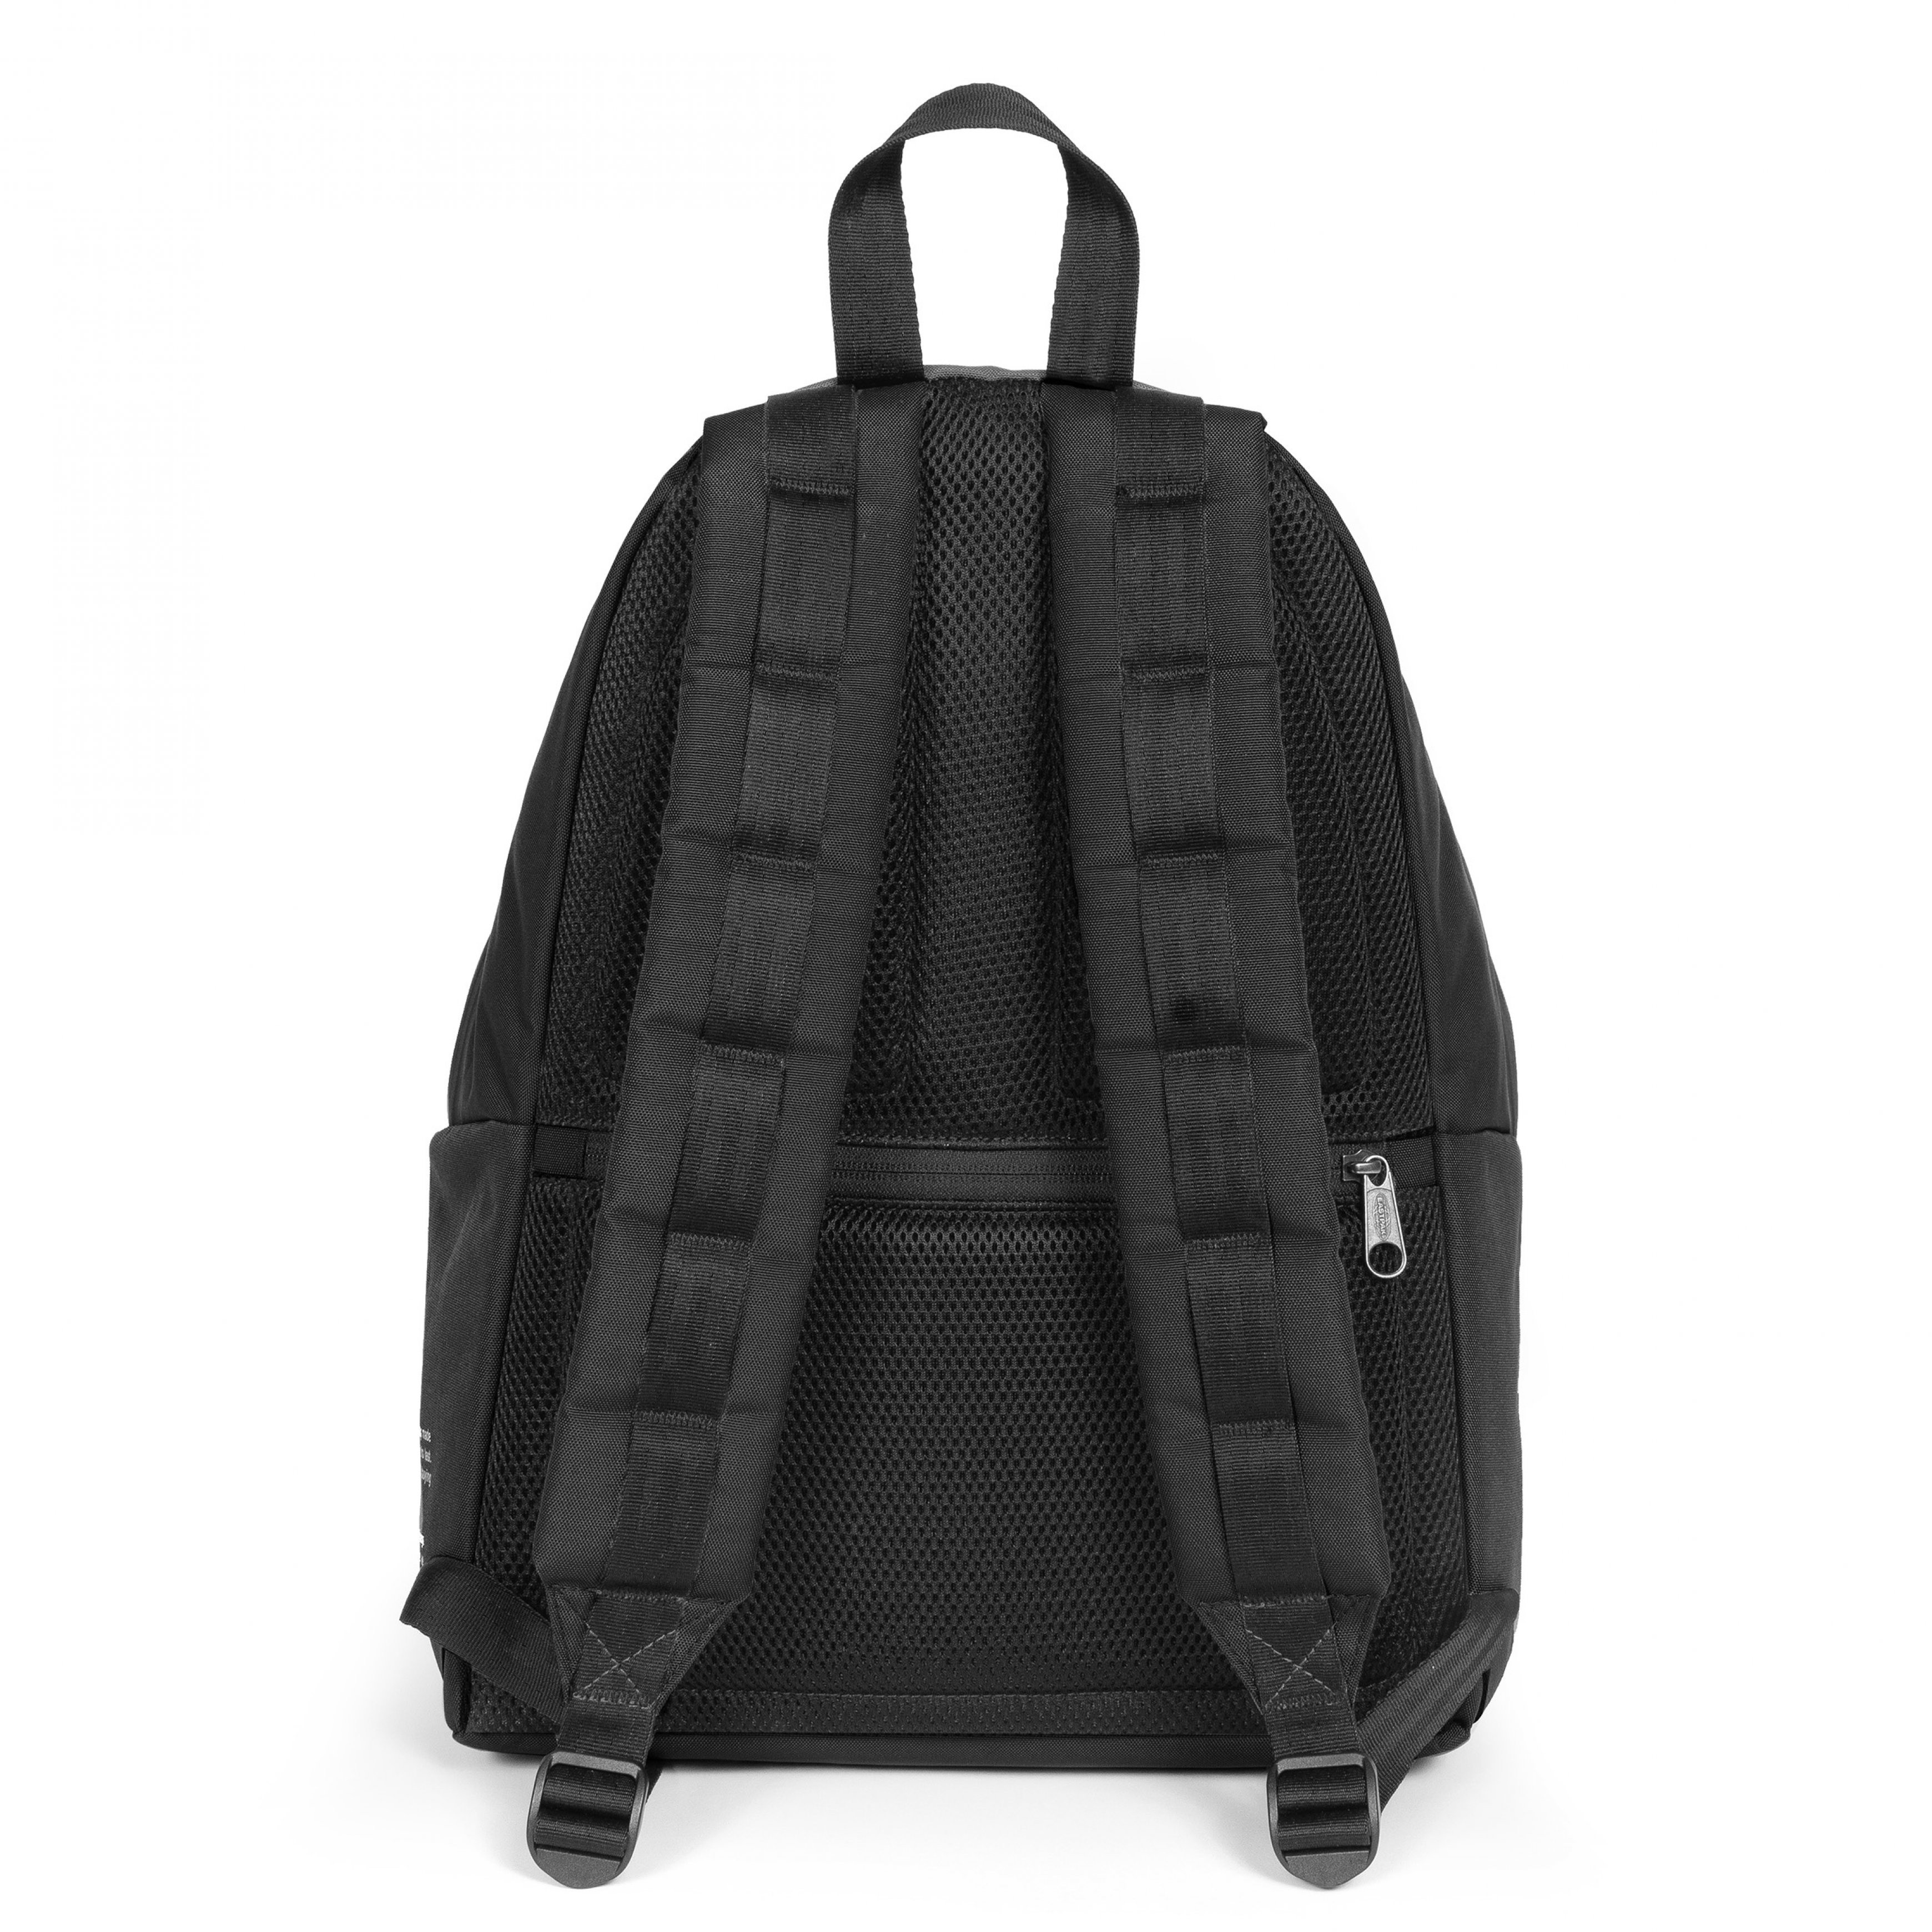 Eastpak - Padded Pak'r Storm Black backpack, Black, large image number 2